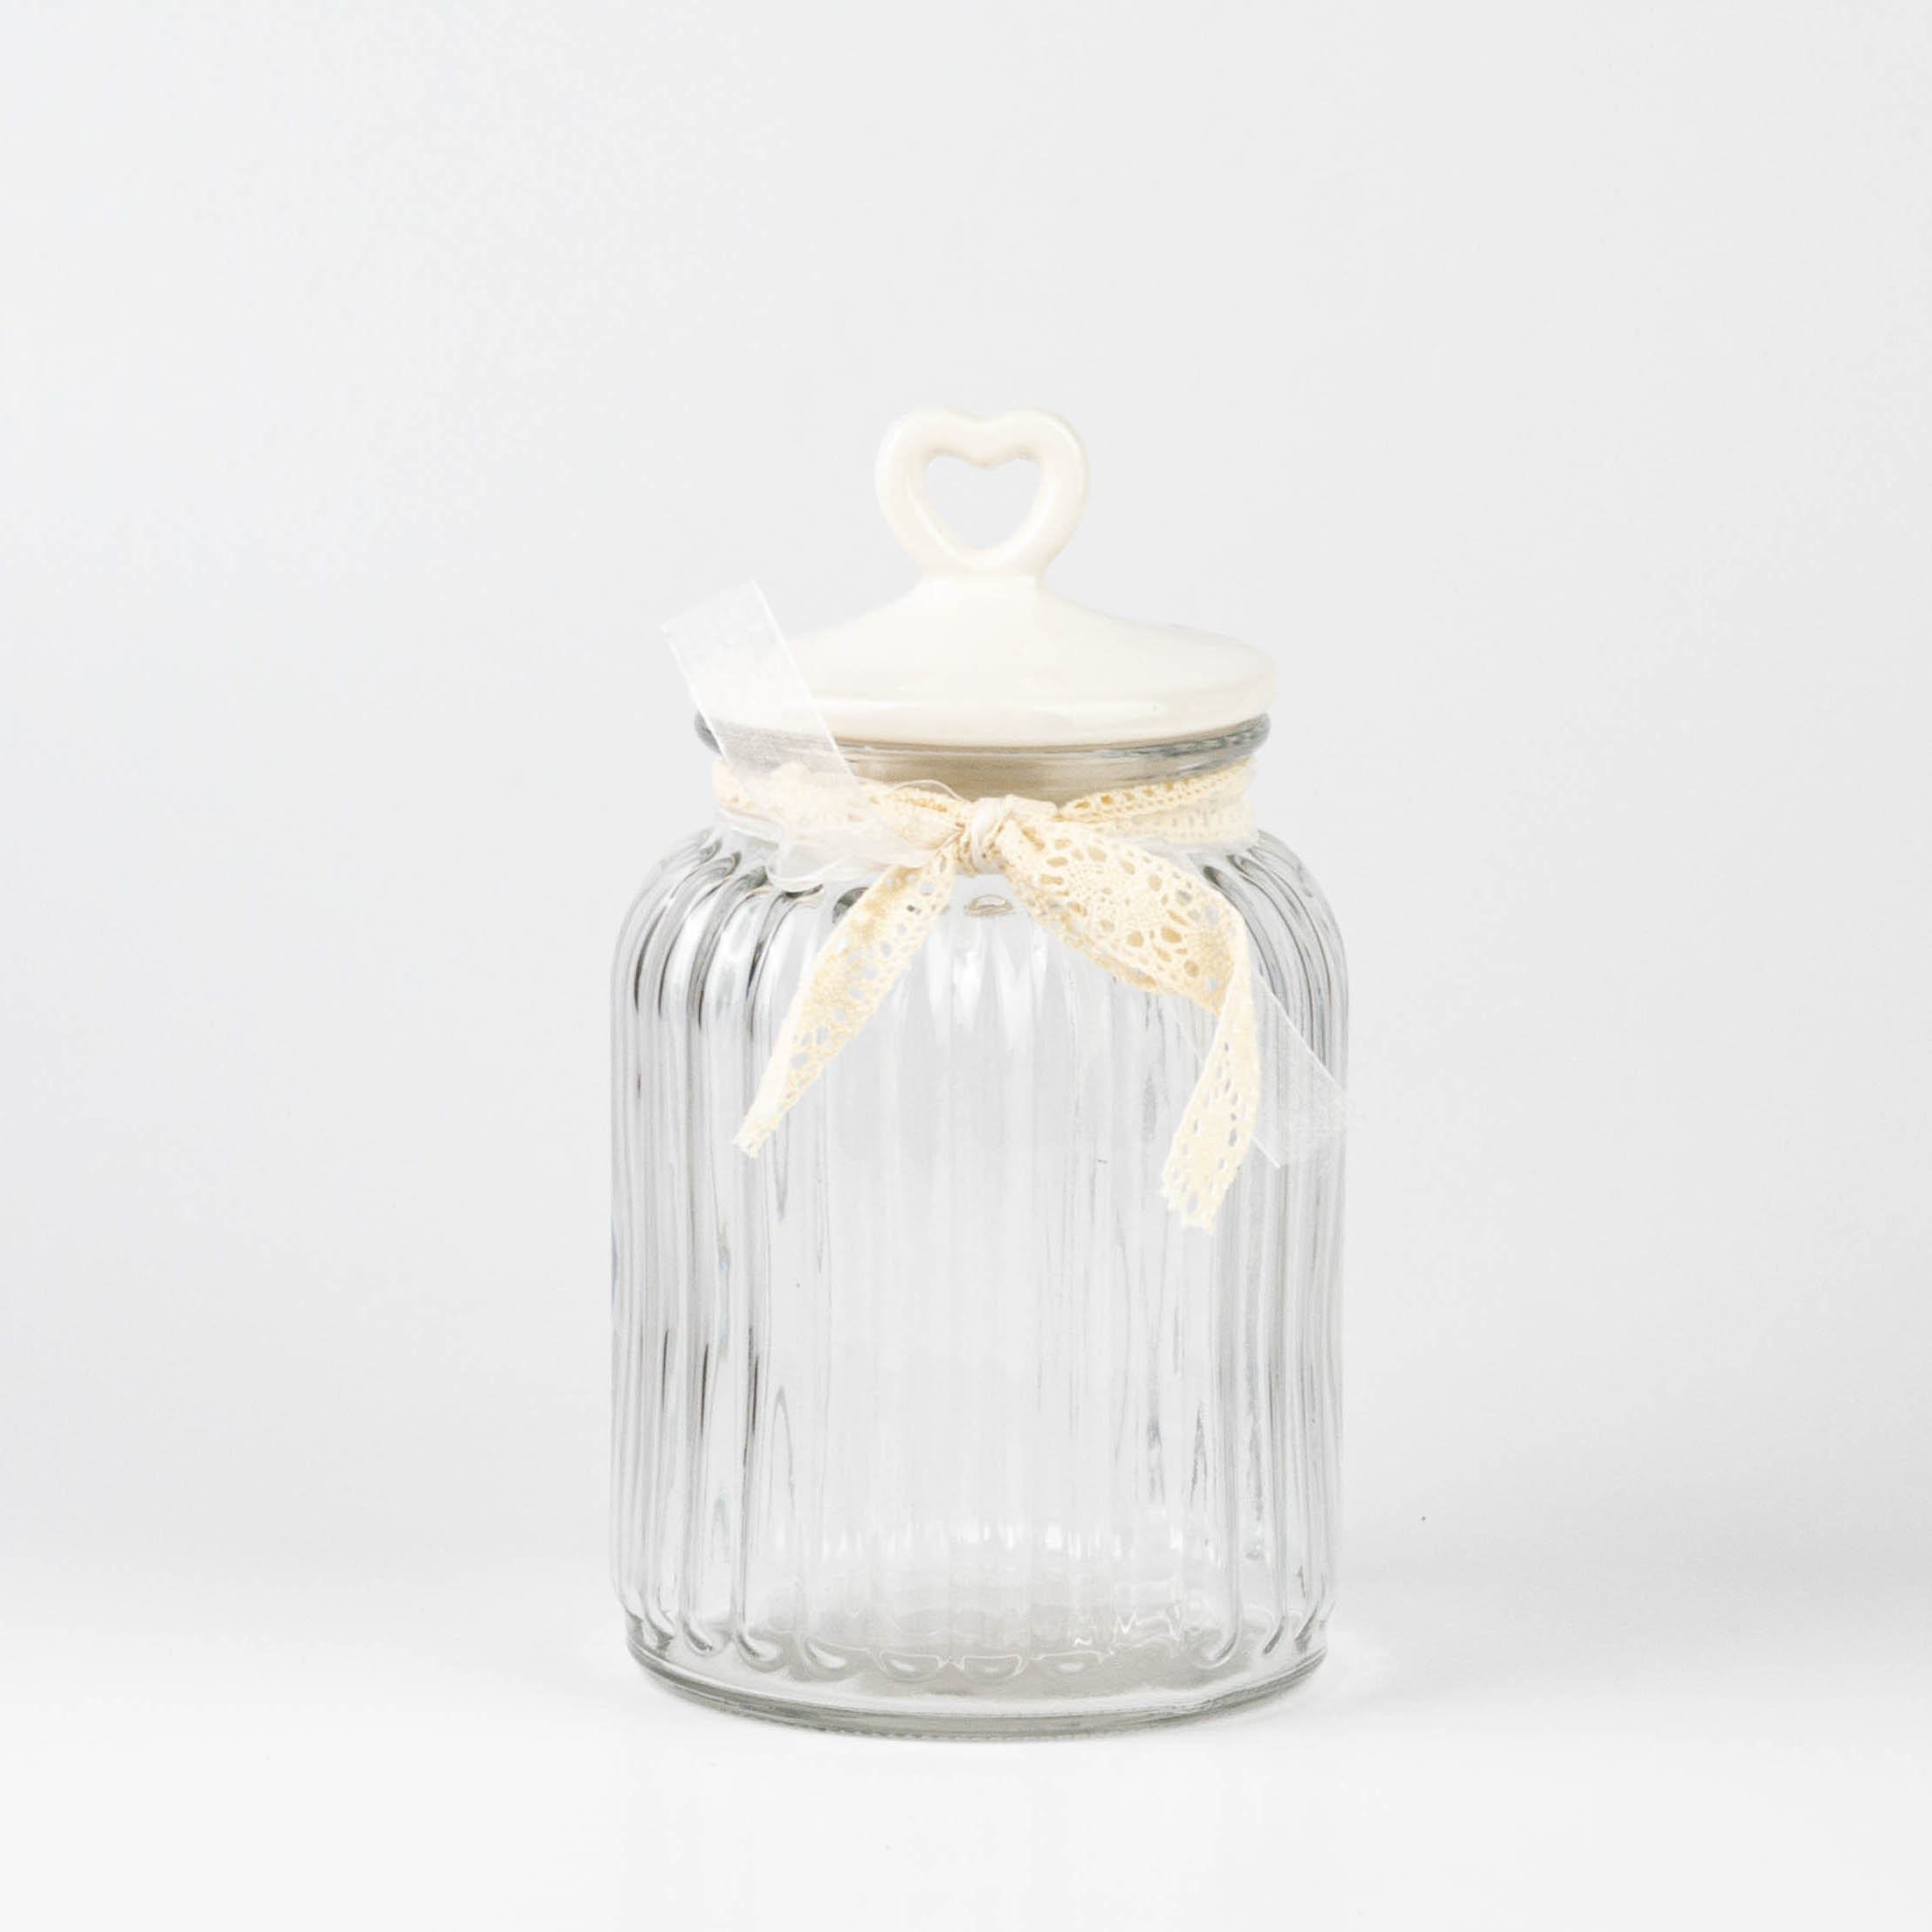 Biscottiera Heart bianca big h33 bianco in ceramica, vetro stile  romantico